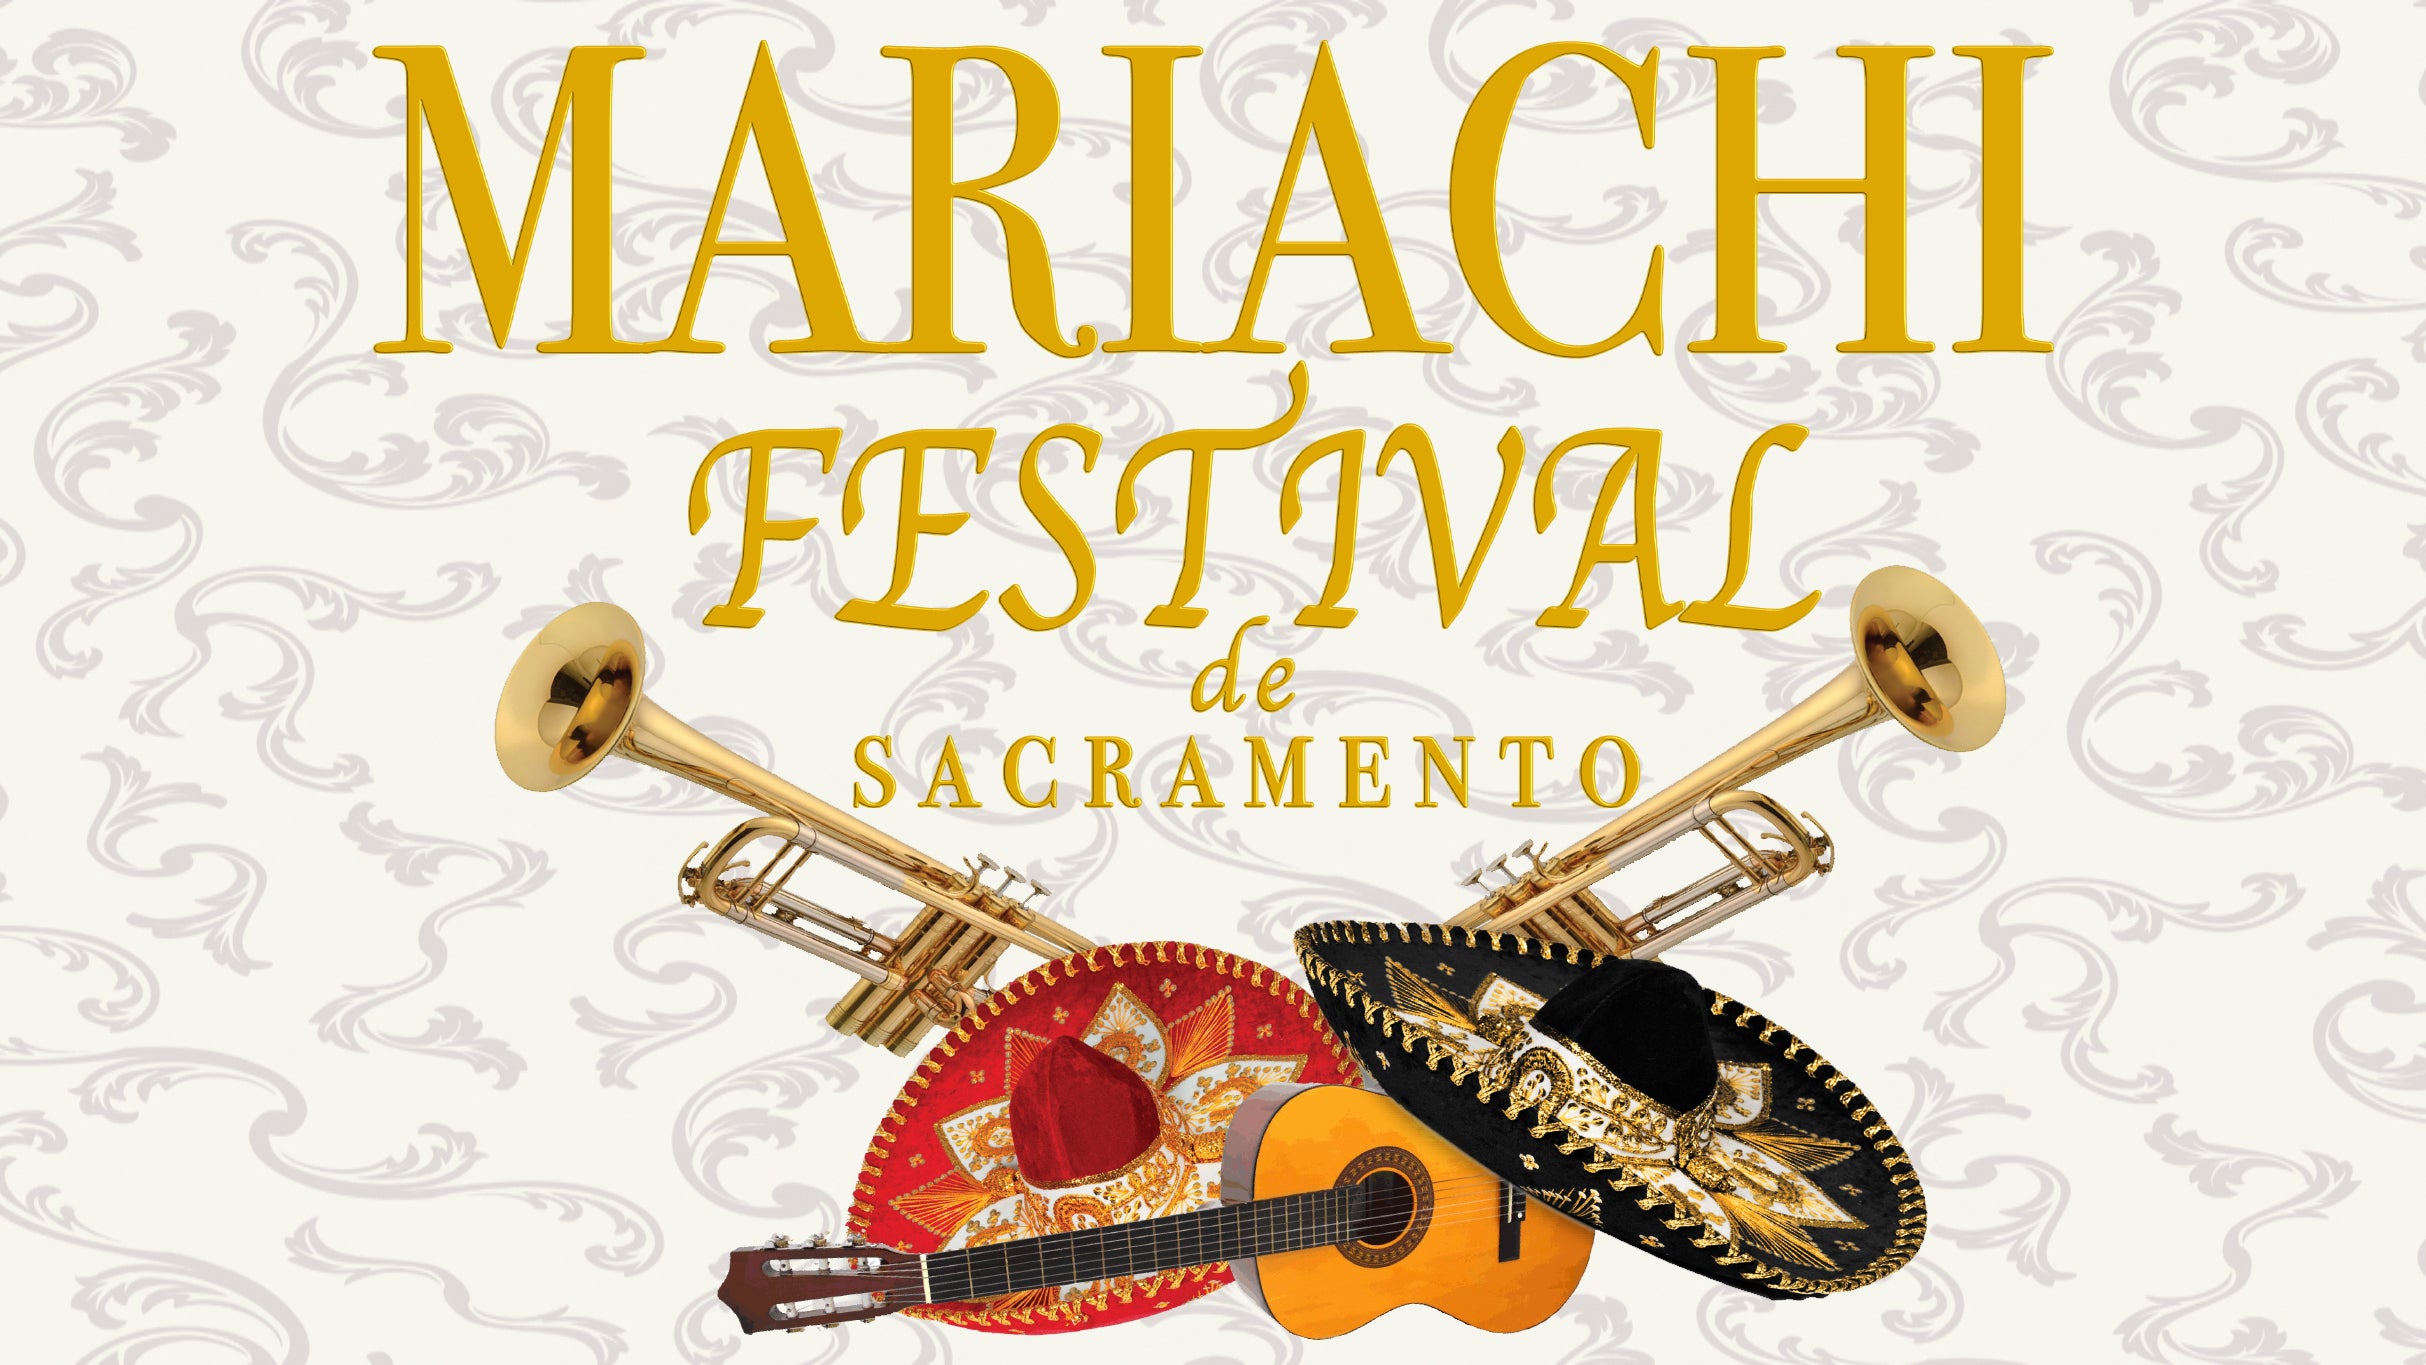 Mariachi Festival de Sacramento in Sacramento promo photo for Exclusive presale offer code